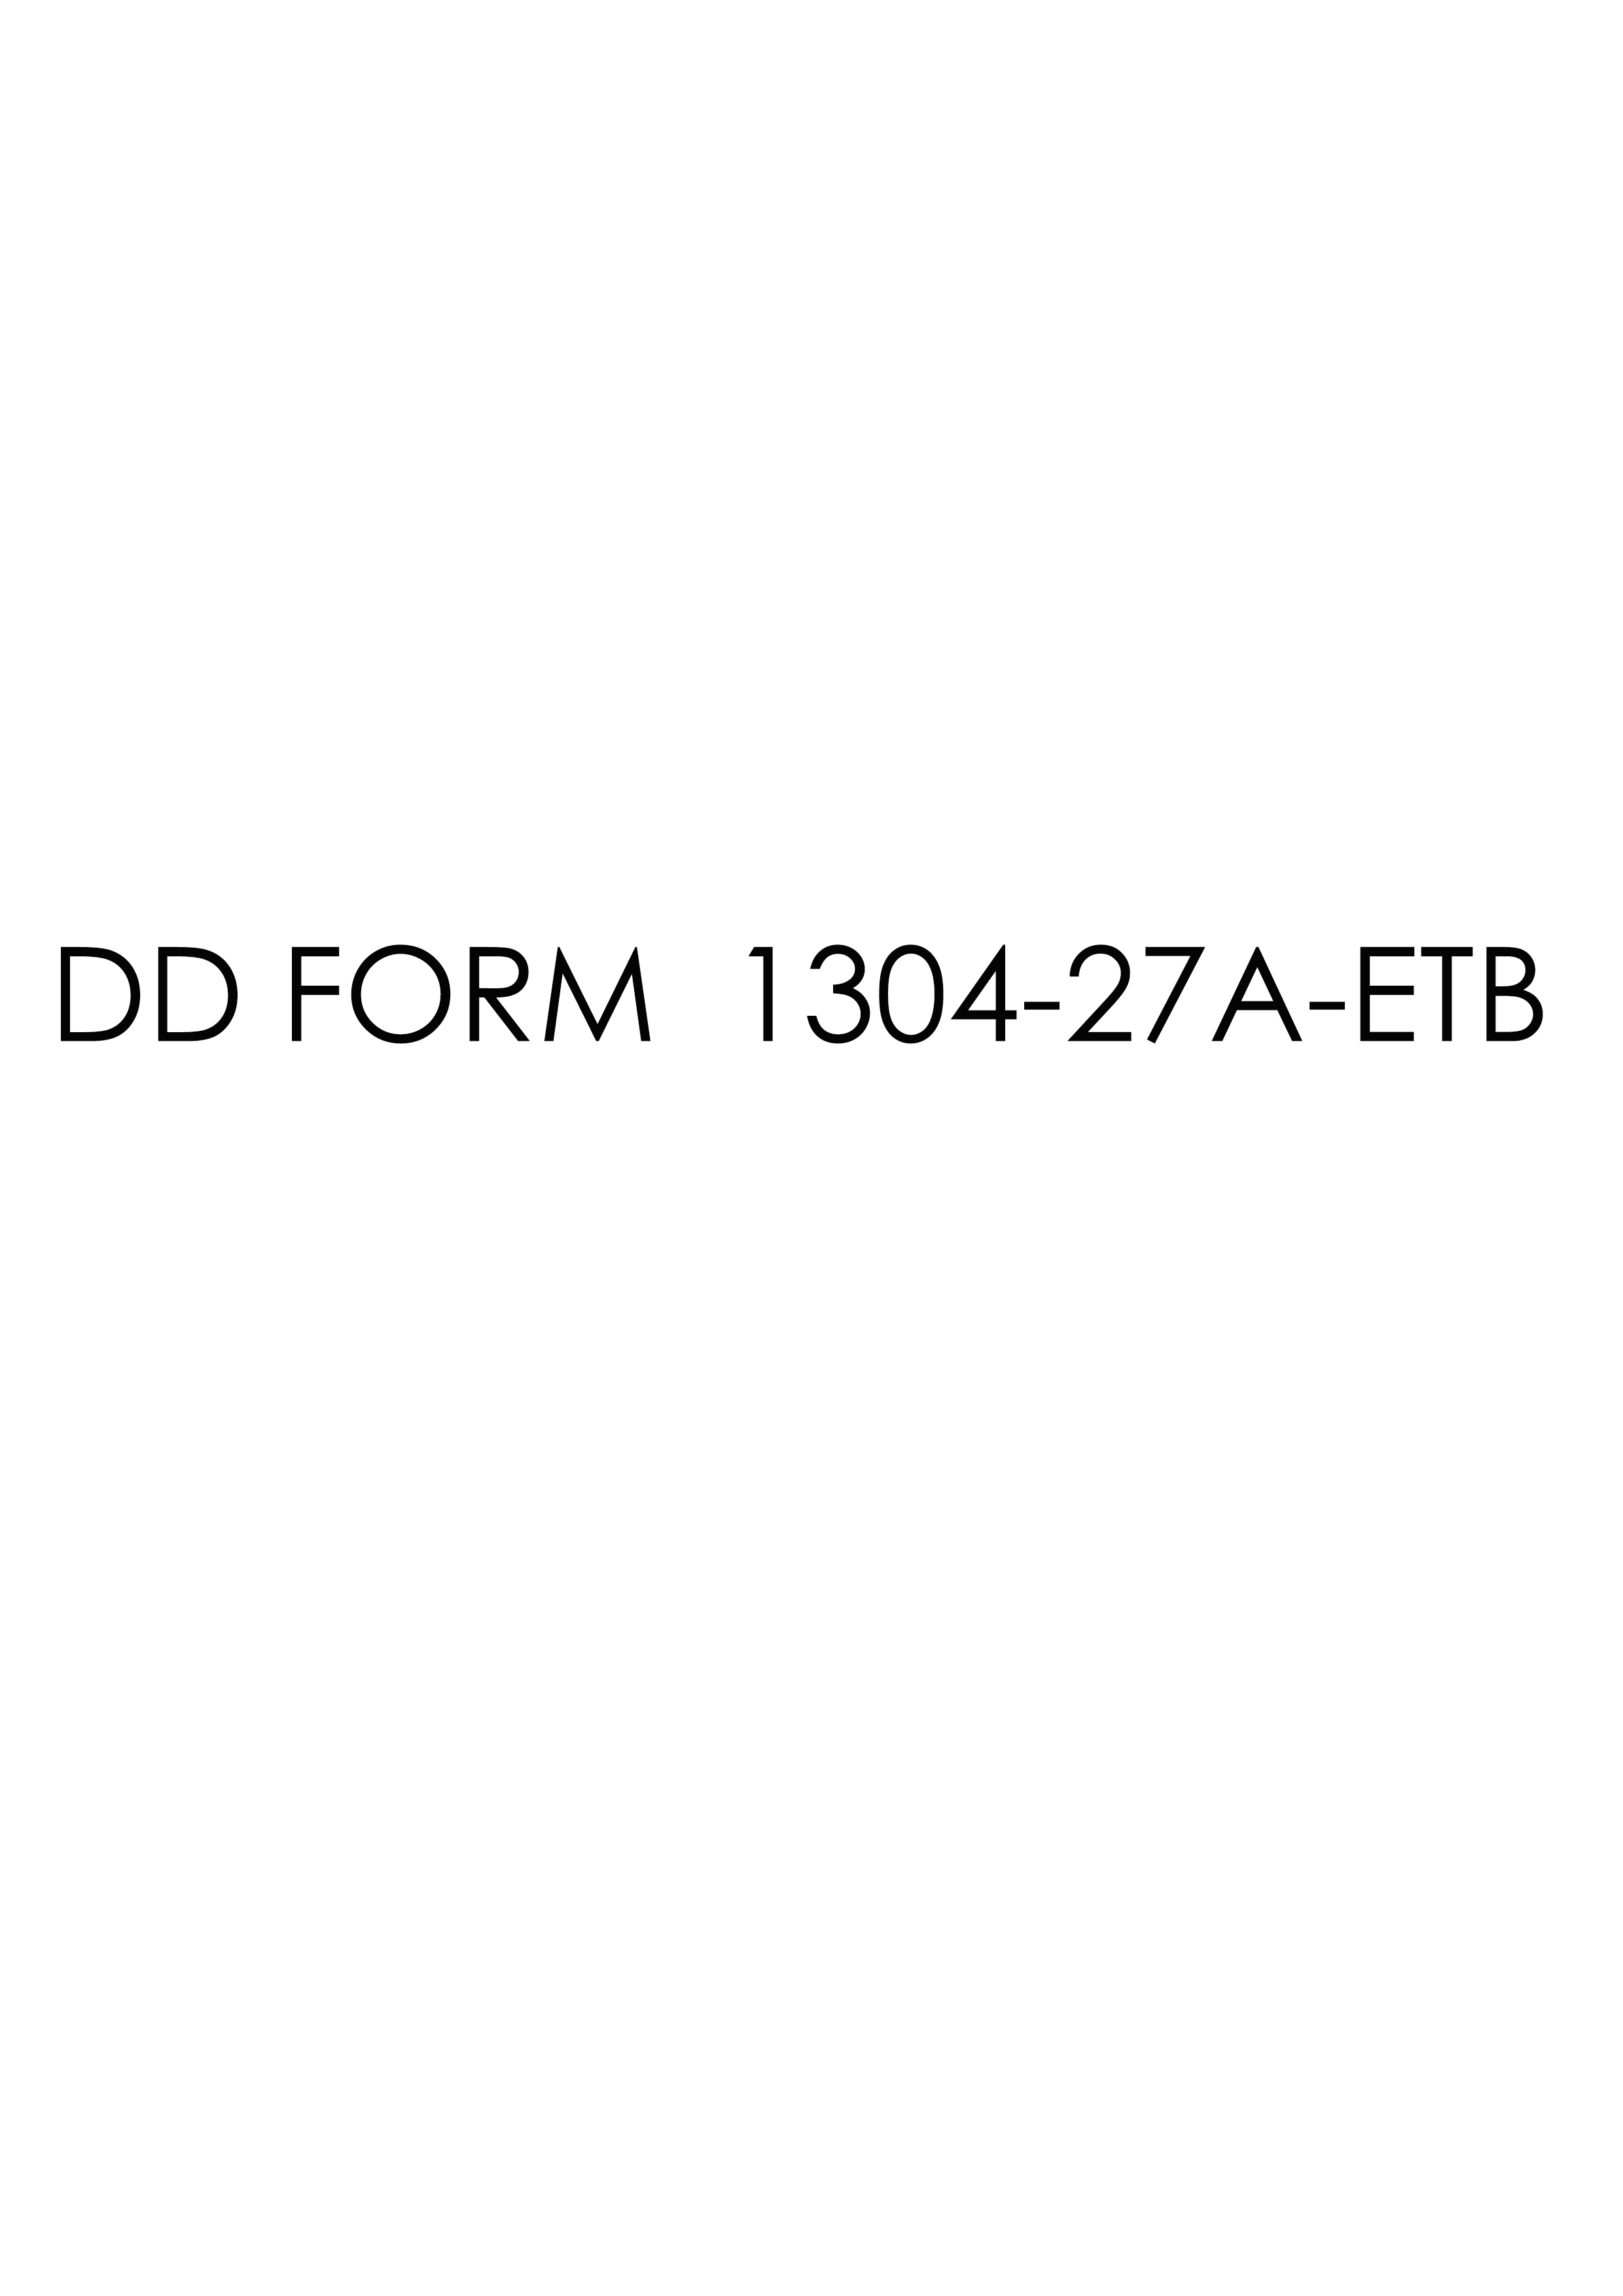 Download dd Form 1304-27A-ETB